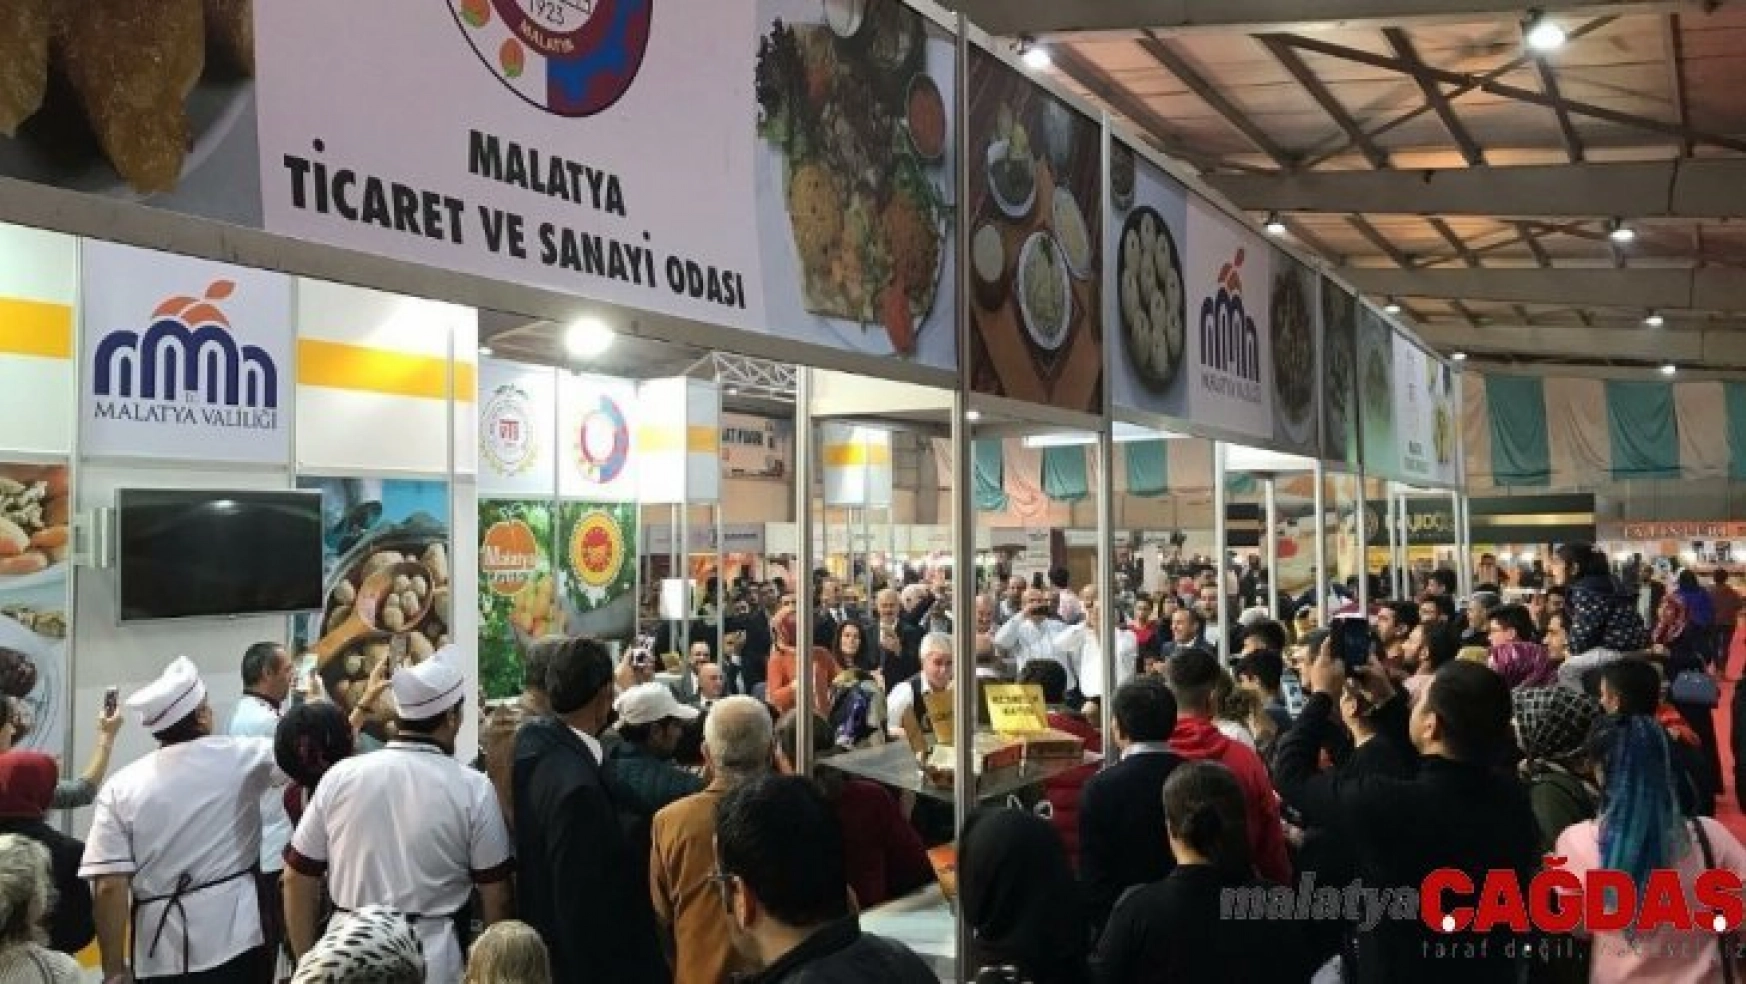 Sadıkoğlu Malatya'nın gurme turizmine büyük katkı sunacak